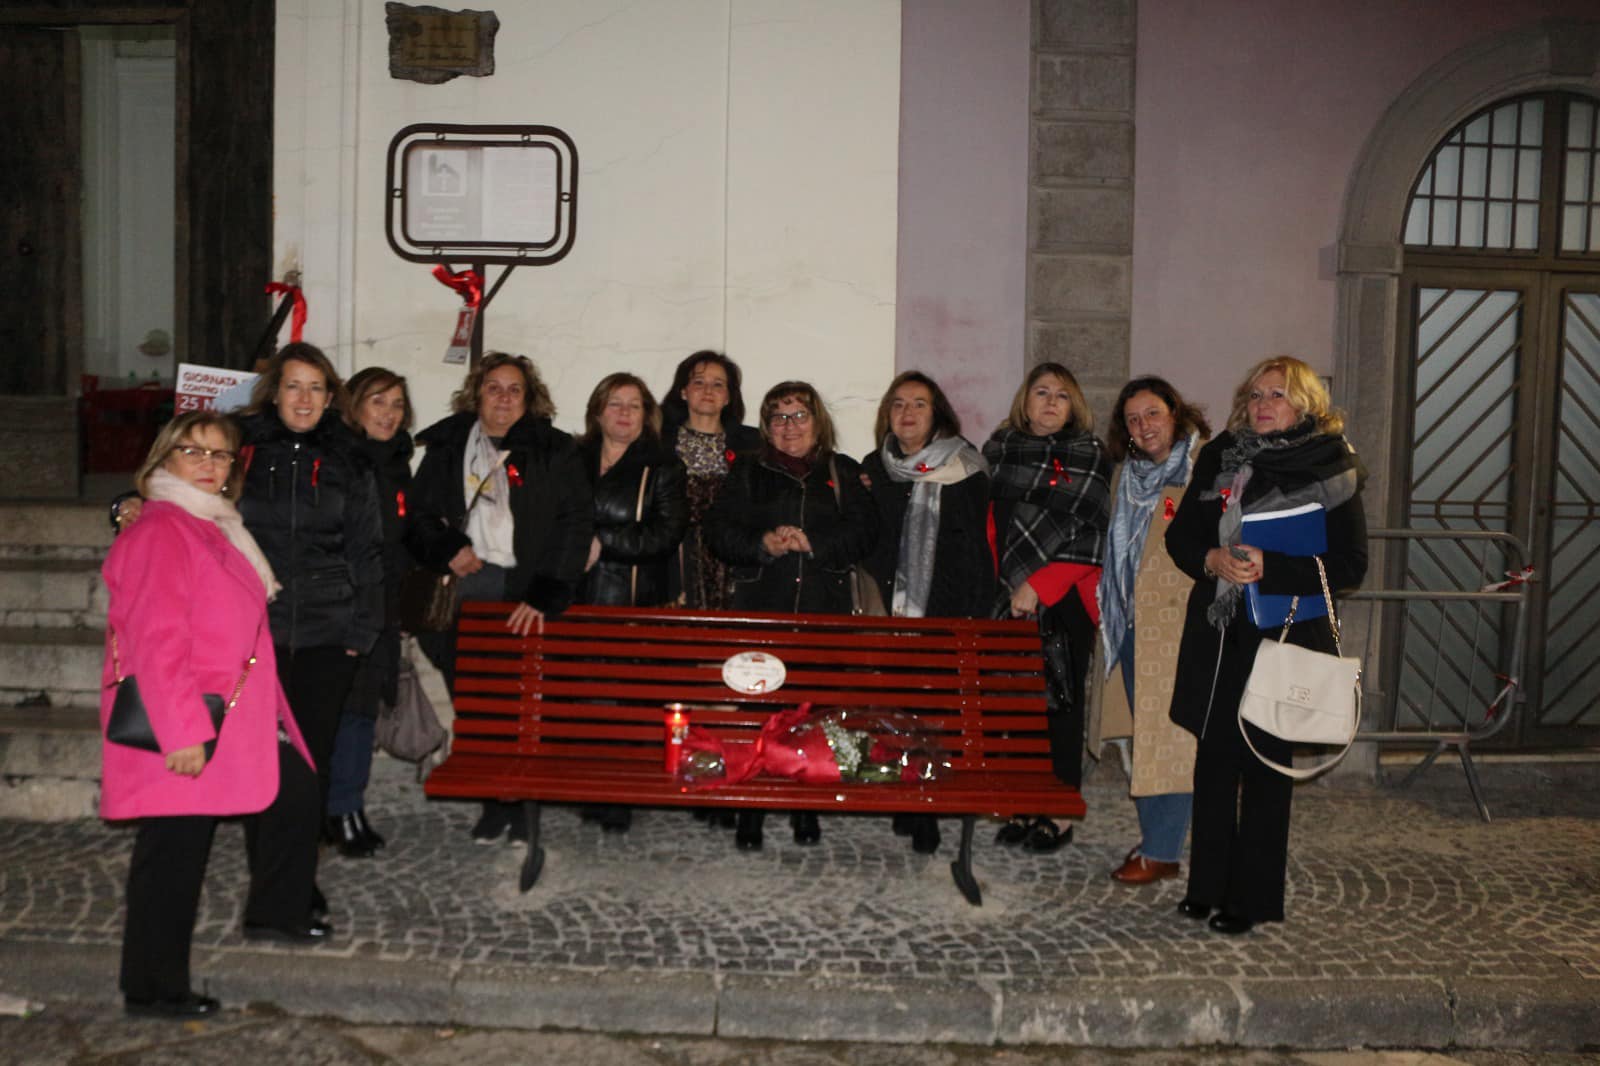 Convegno a Visciano: “Stop Violenza sulle Donne”   Messaggi di Sensibilizzazione e Impegno Sociale